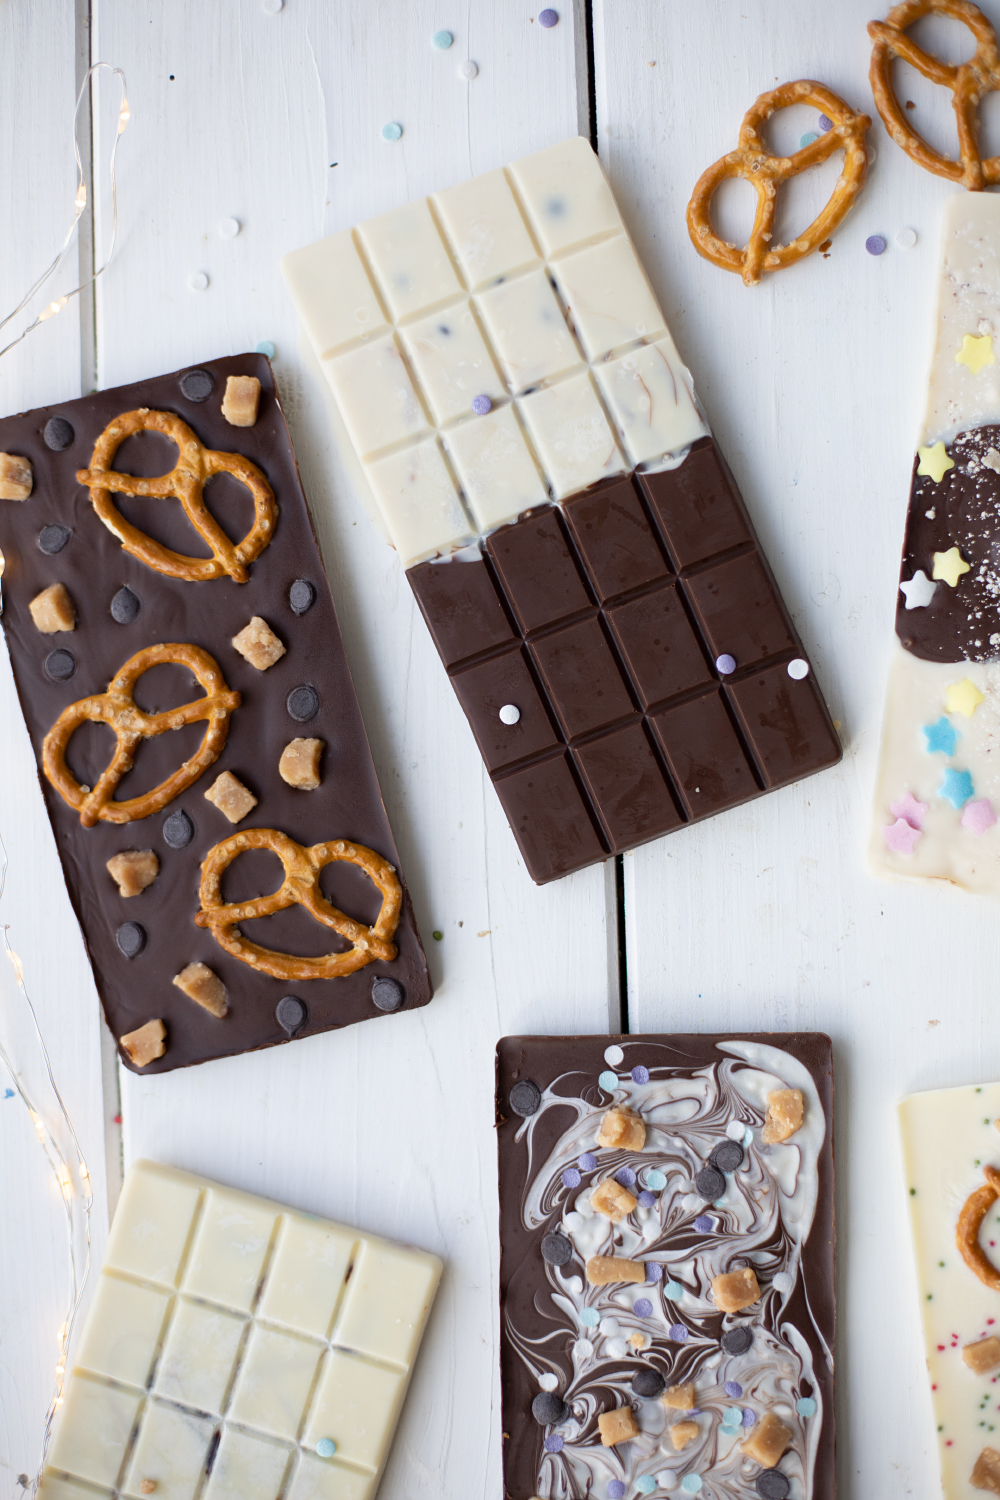 DIY chocolate bars as a gift idea